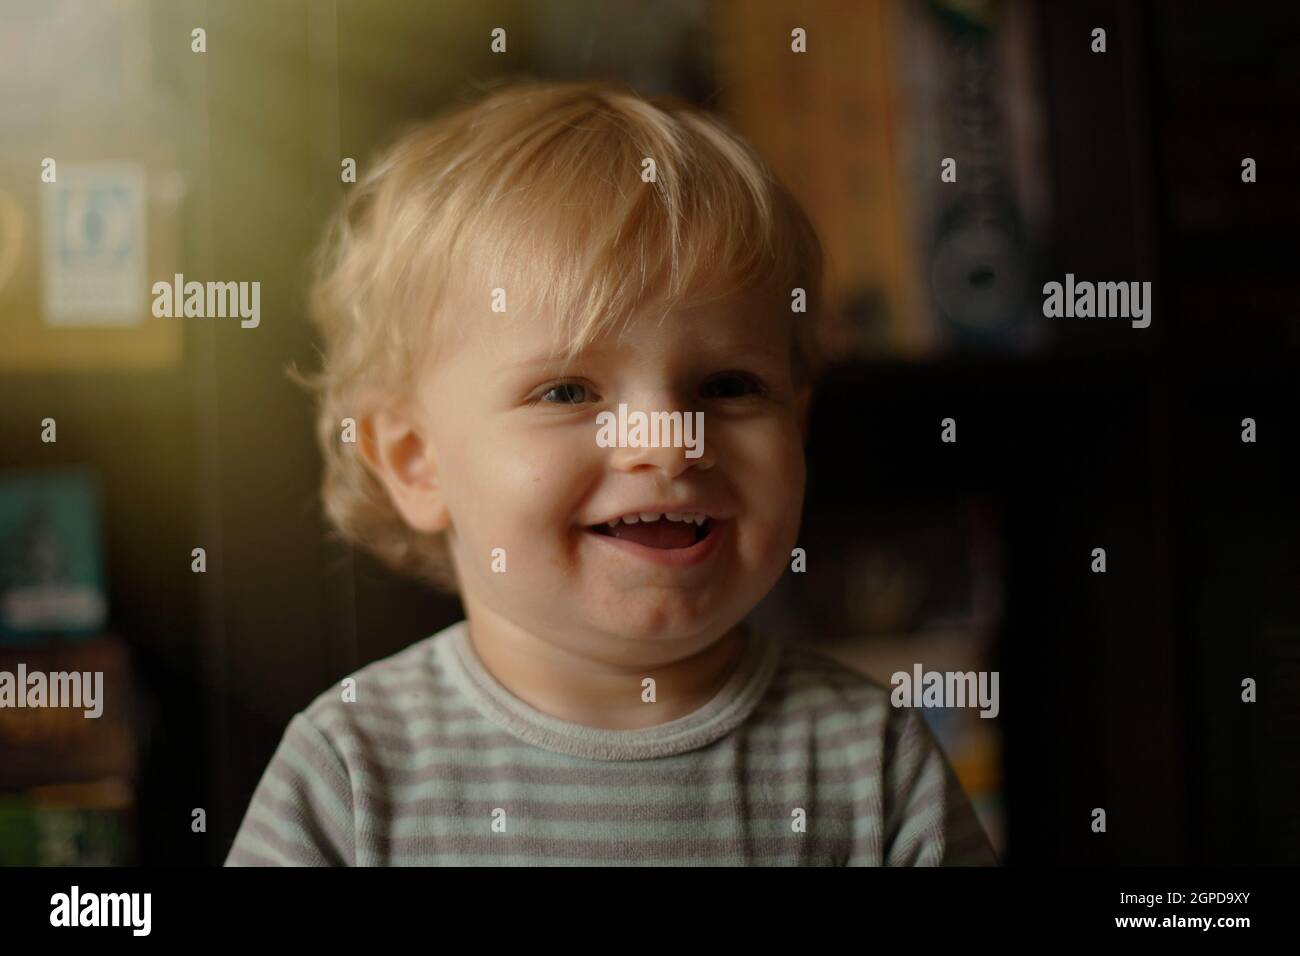 Adorabla bebé con un año de antigüedad vistiendo pijama en casa Foto de stock